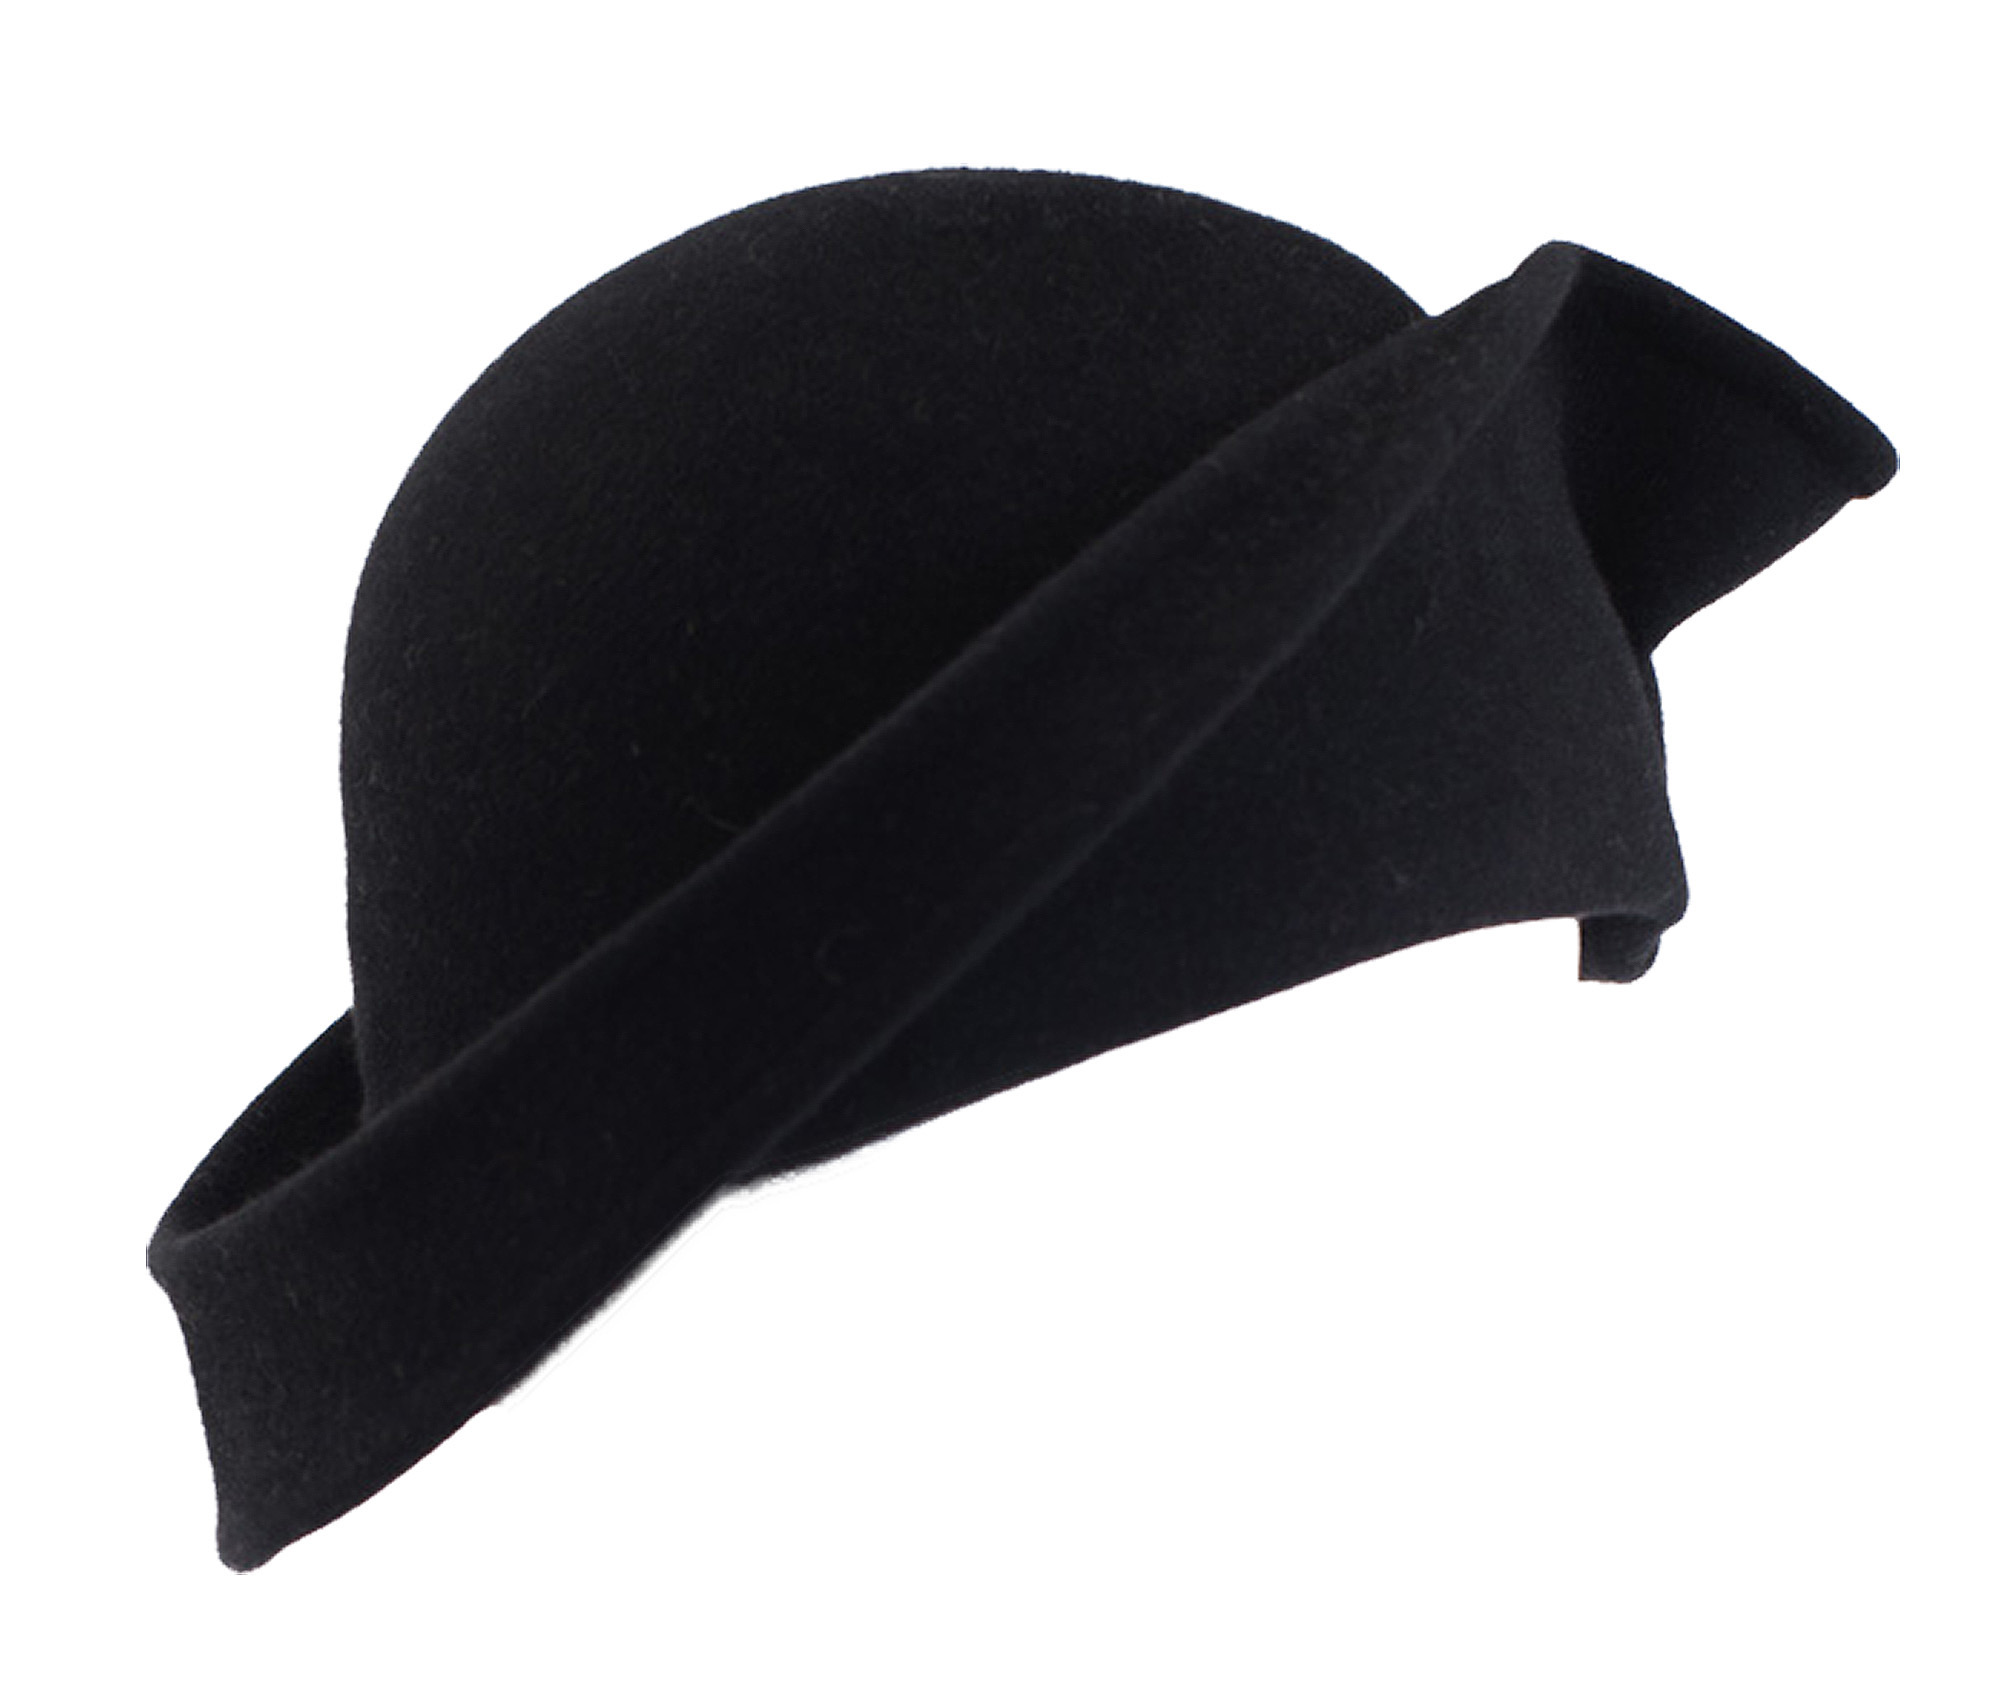 Accessoires Hoeden & petten Nette hoeden Cloche hoeden Dames cloche hoed gemaakt van leer "Malvina" winter leer aangeklaagd vintage stijl hoofdtooi 